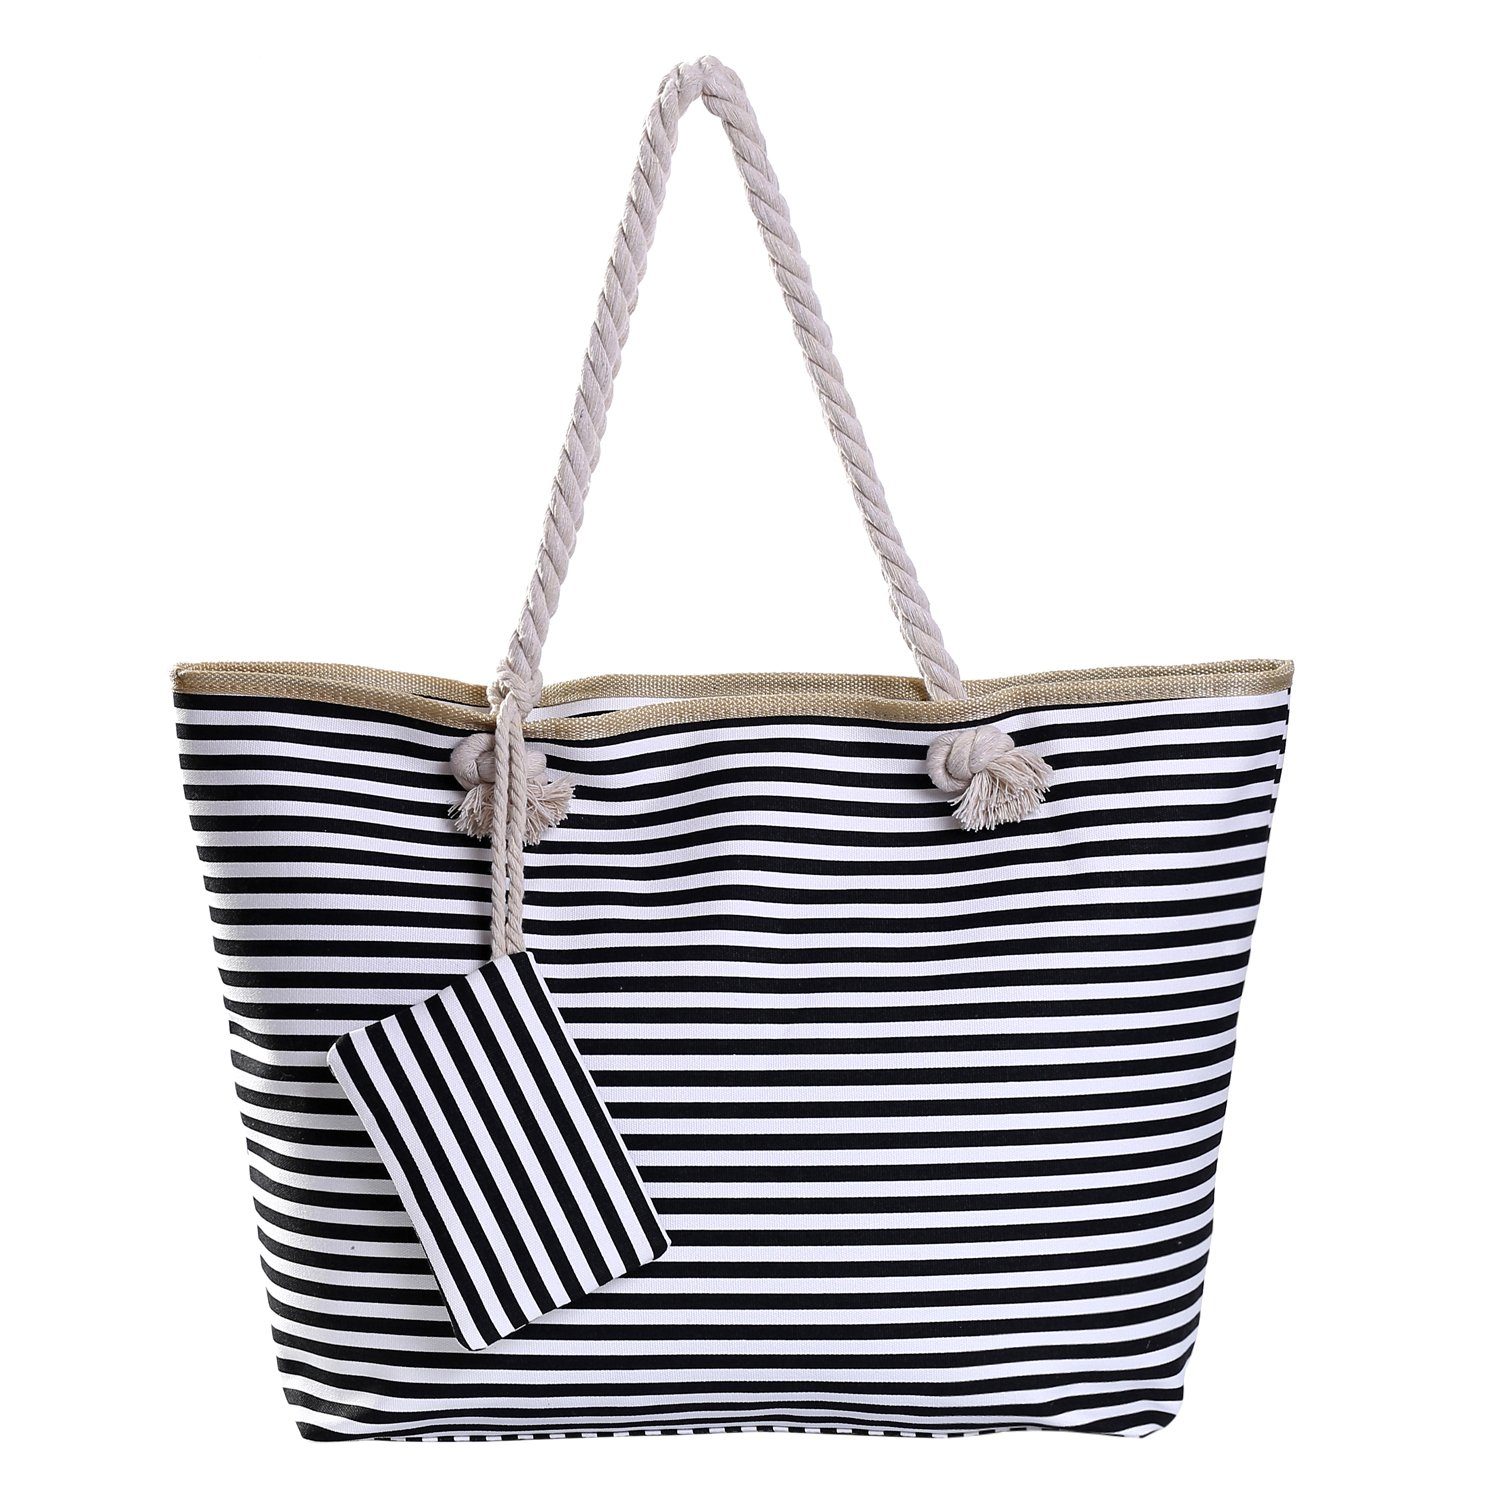 DonDon Strandtasche Shopper wasserabweisende Tasche (2-tlg), Große Strandtasche, mit Reißverschluss, inkl. kleinem Beutel schwarz-weiß gestreift